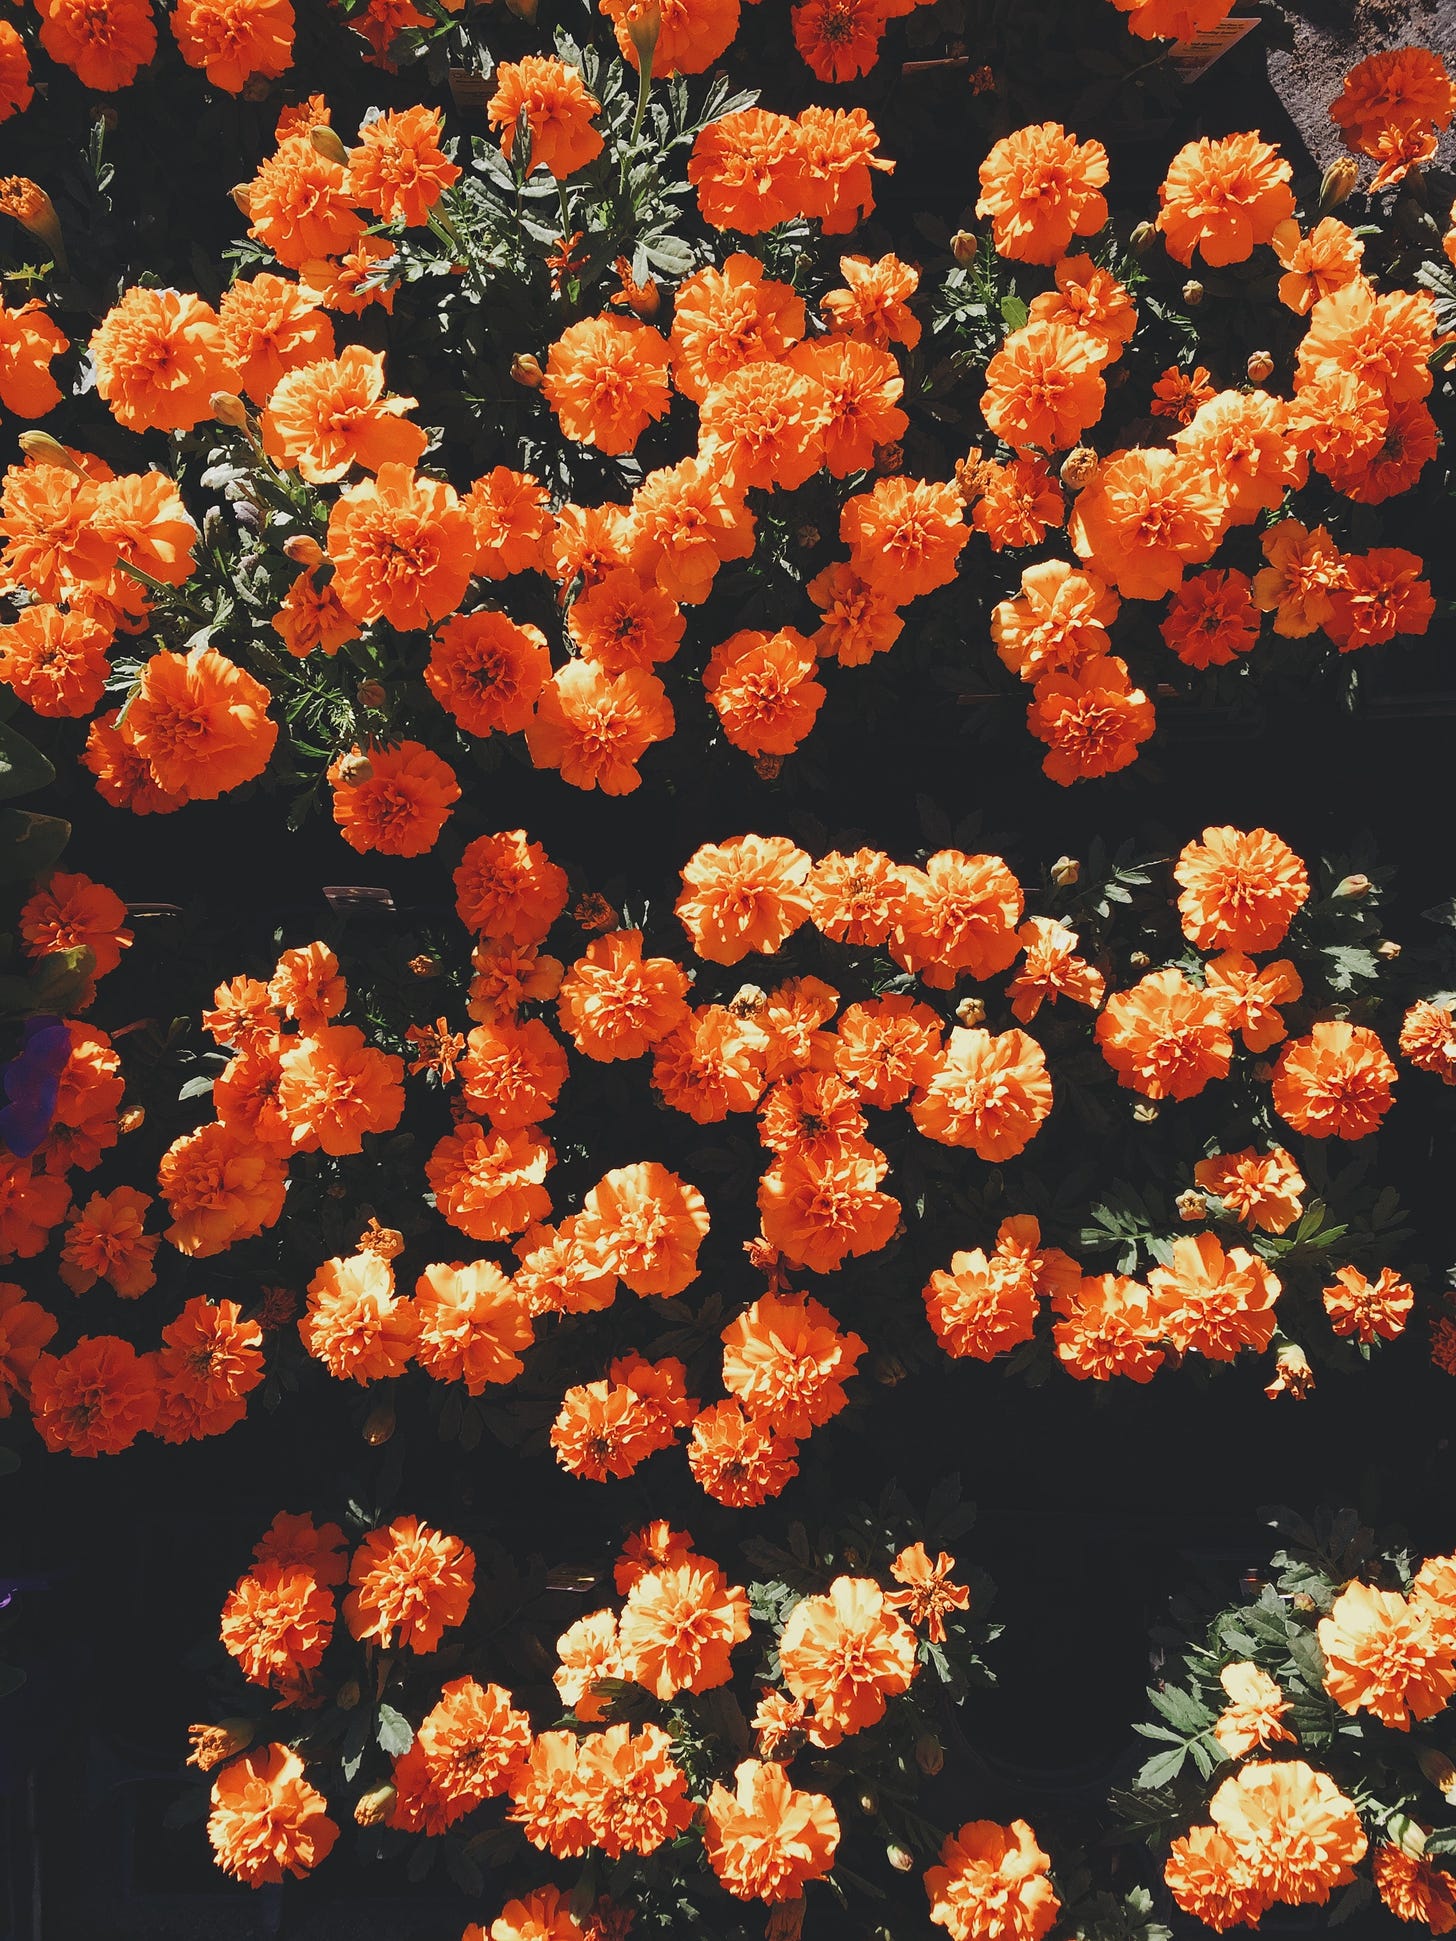 Fotografia de flores alaranjadas vistas de cima que contrastam com um fundo escuro